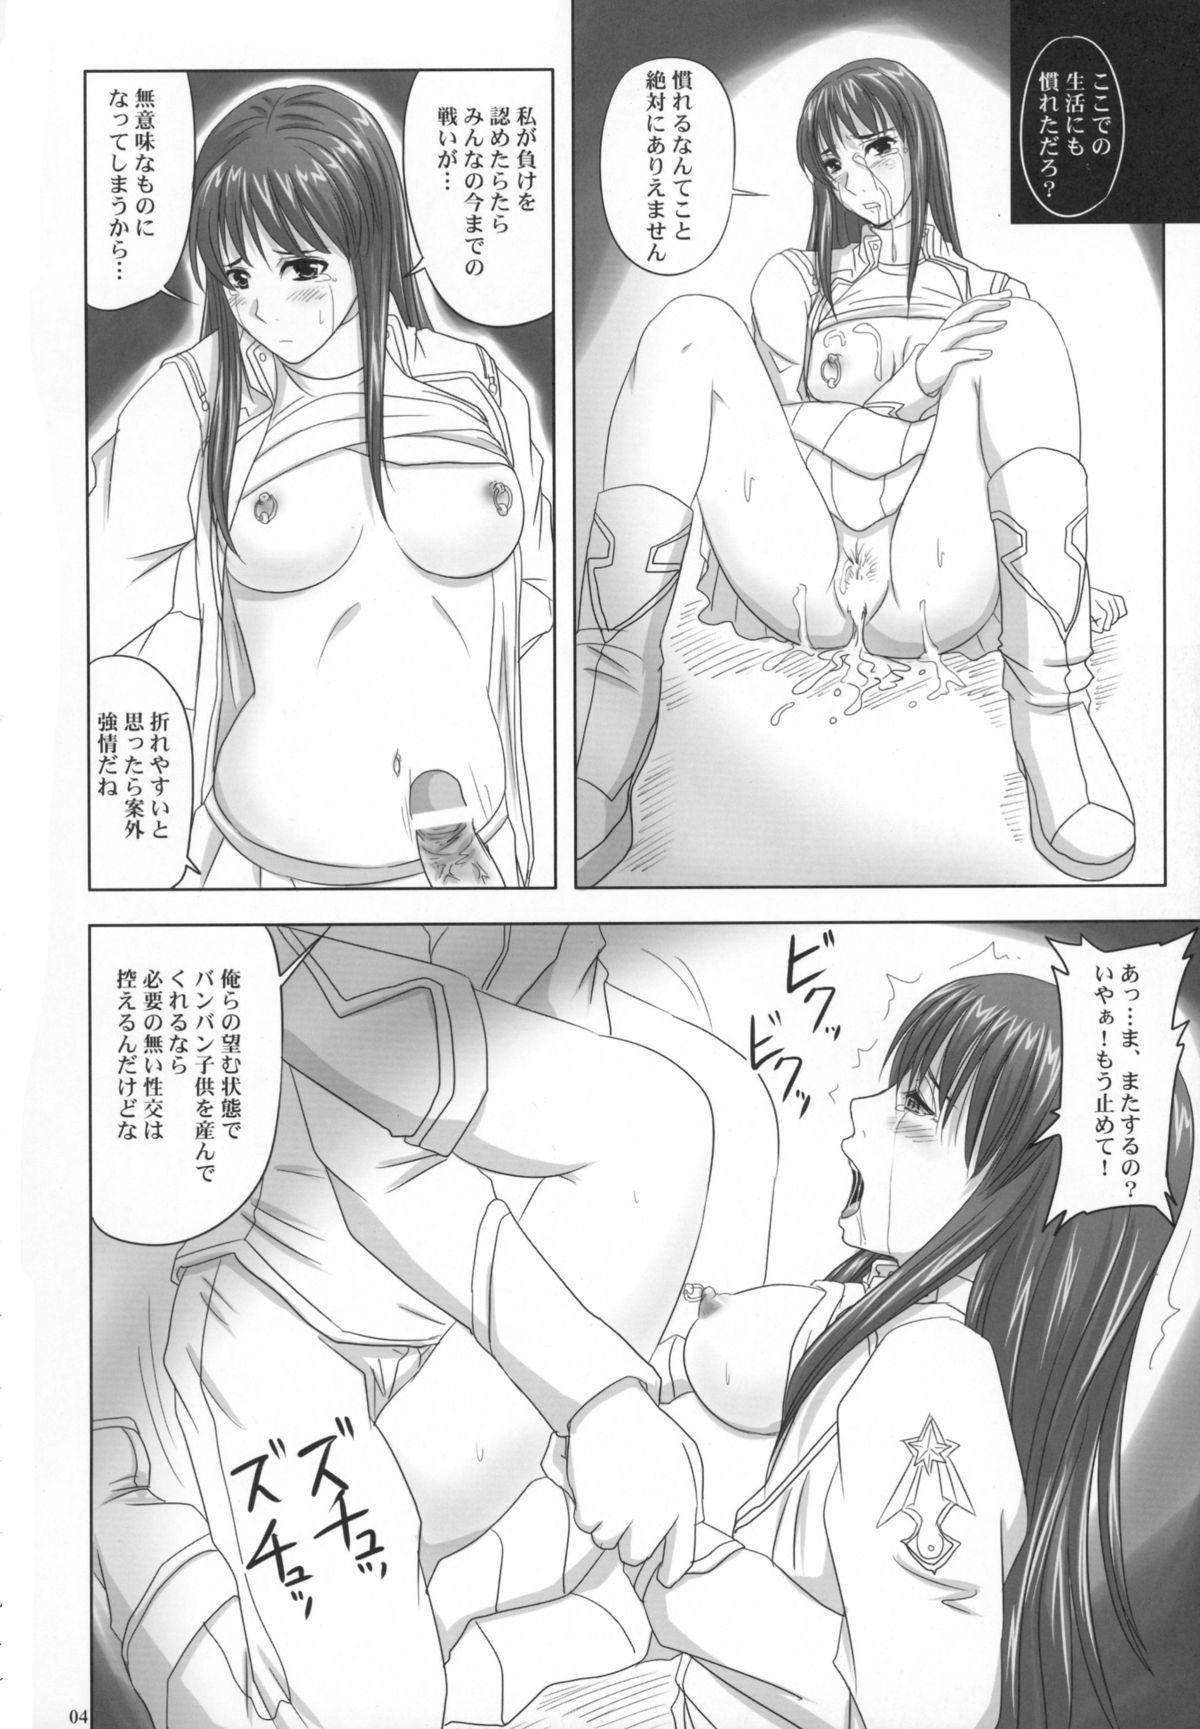 Ball Sucking Daishiji SuuRobo Heroine Daisakusen - Super robot wars Hymen - Page 4